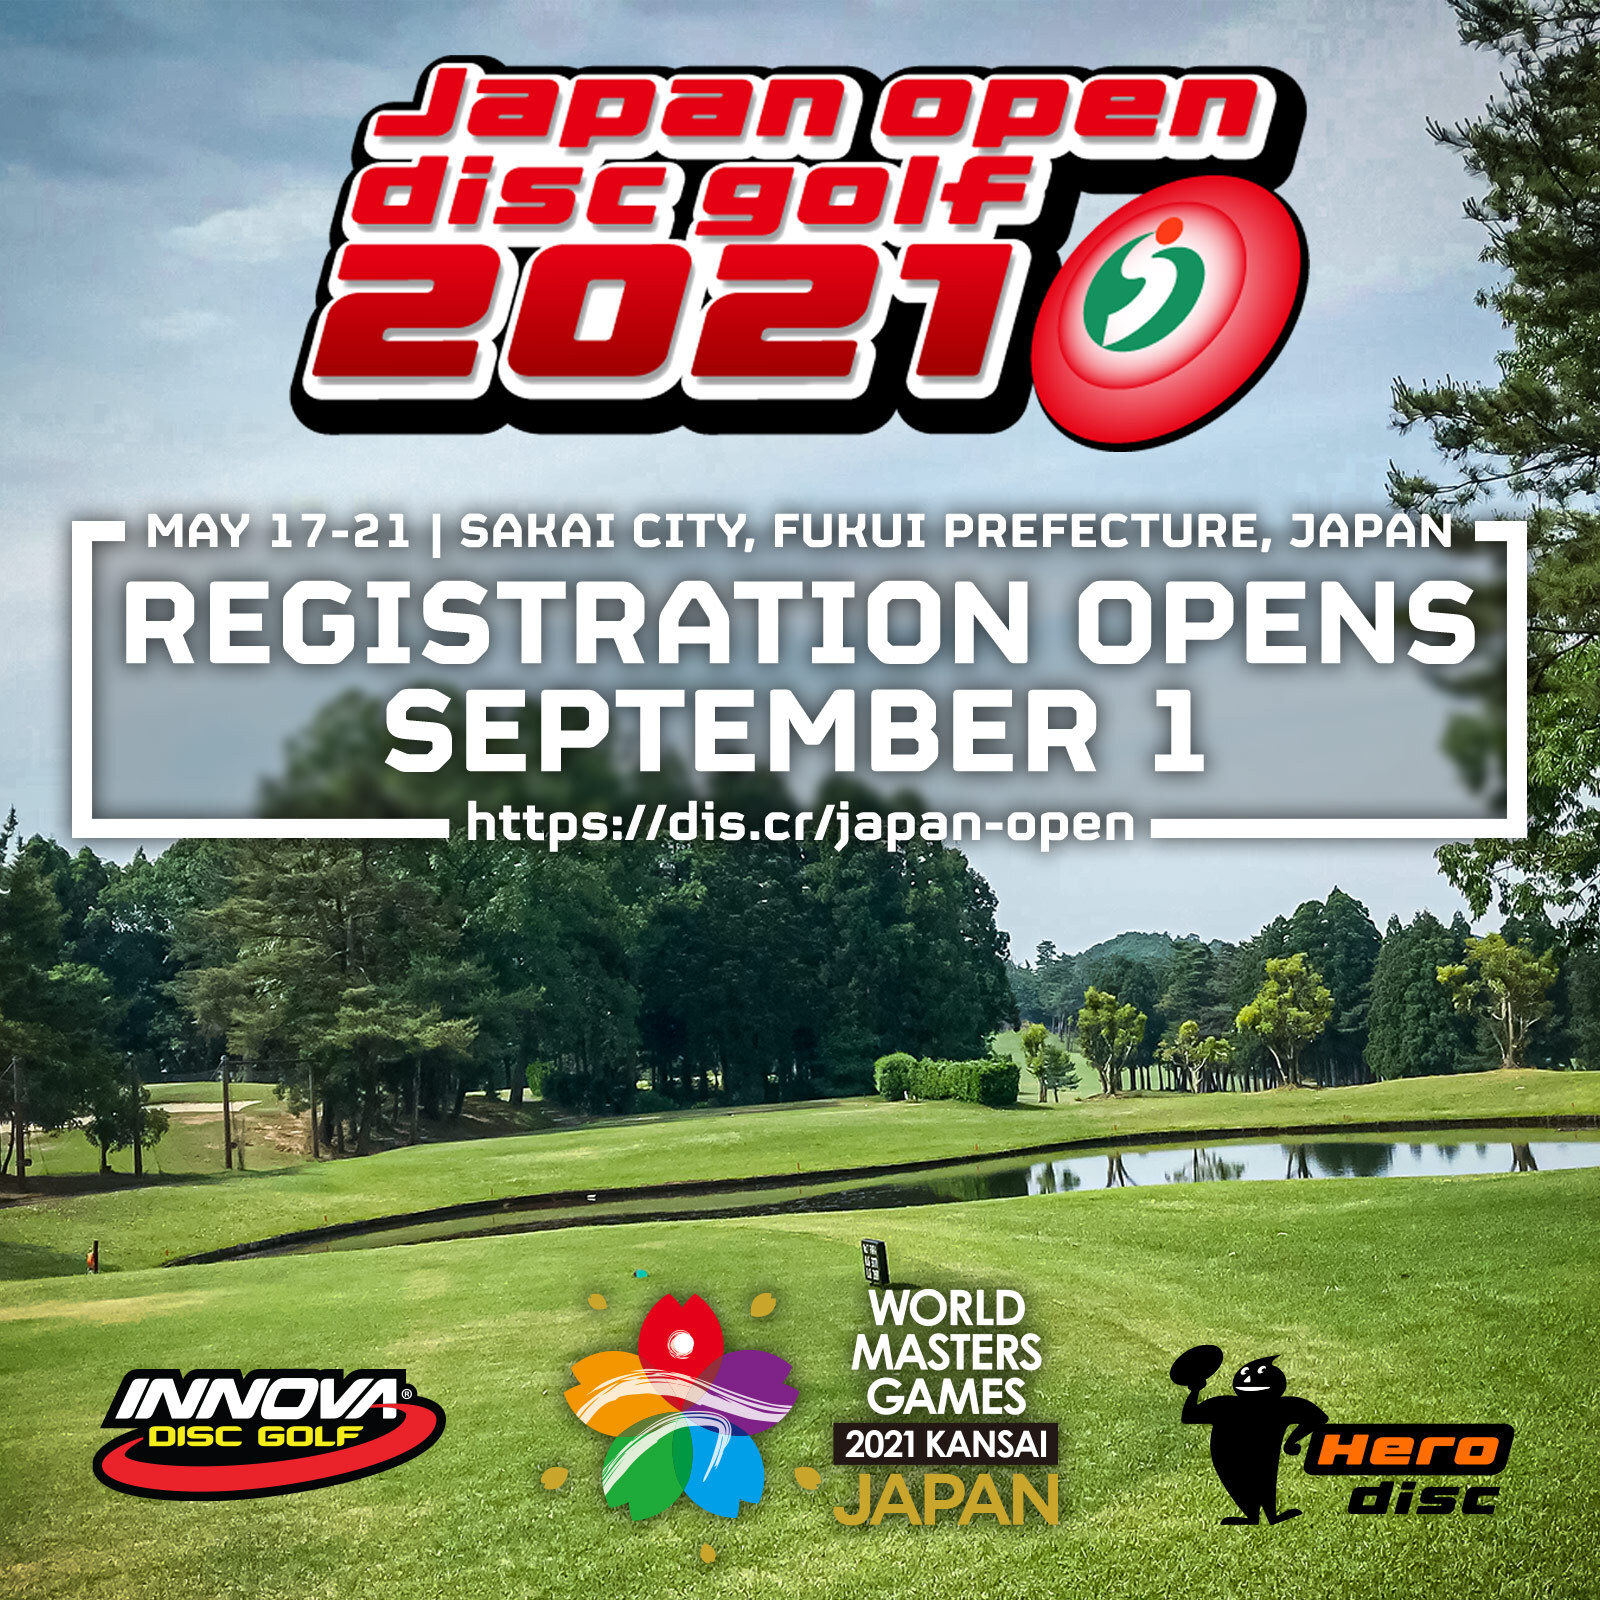 Japan Open 2021 Registration Opens September 1 Innova Disc Golf